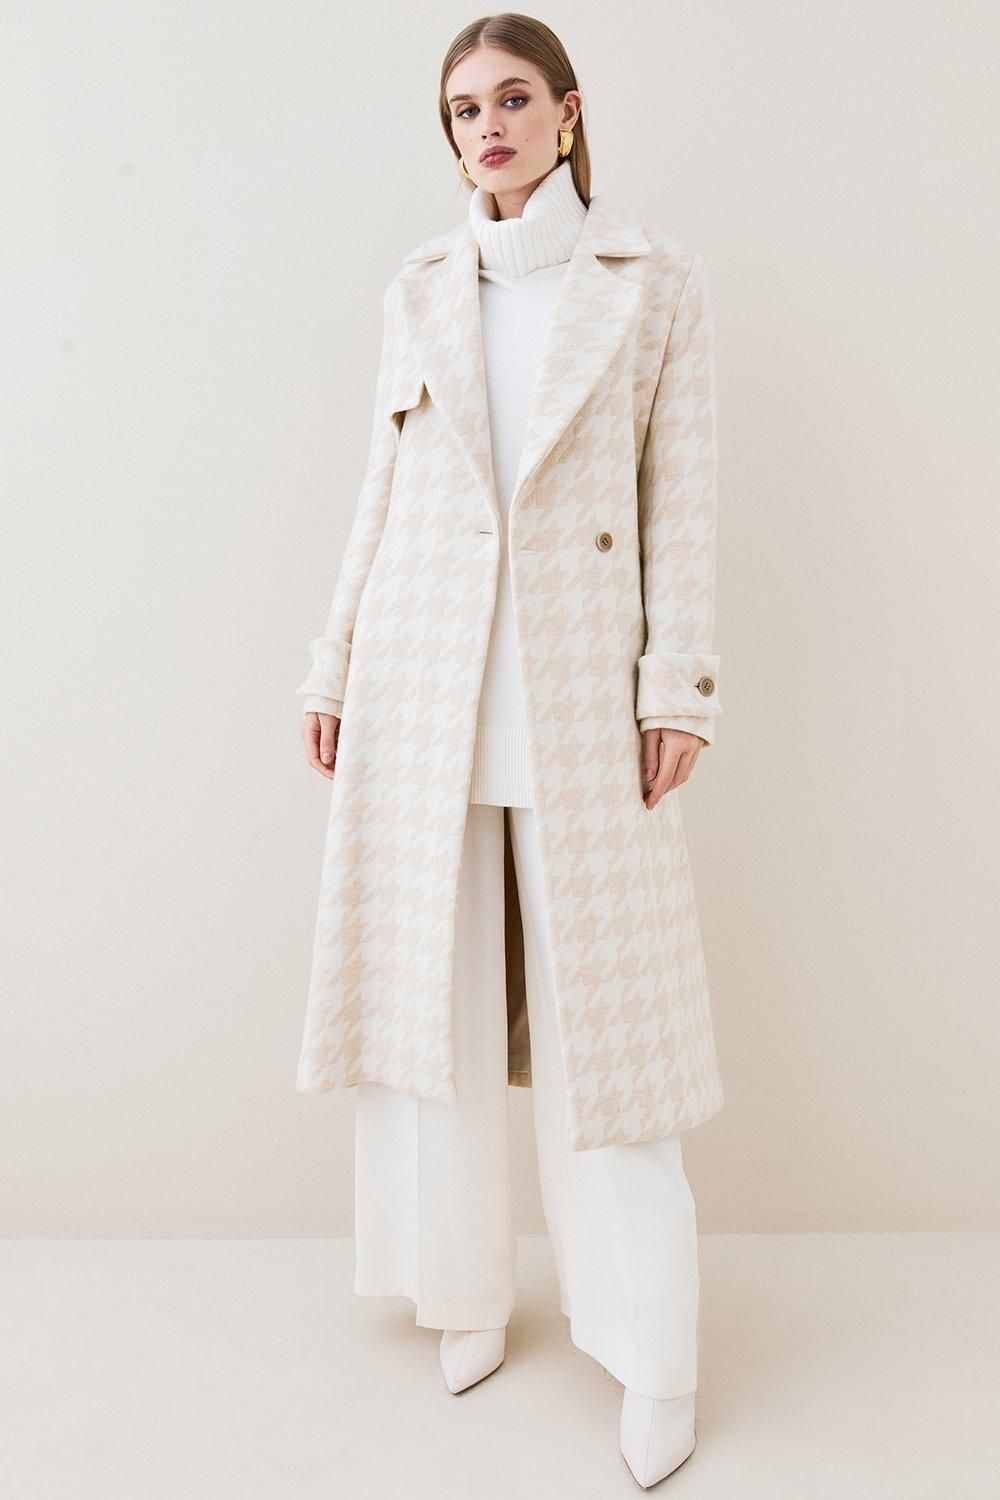 Italian Wool Cashmere Oversized Dogtooth Coat | Karen Millen UK + IE + DE + NL